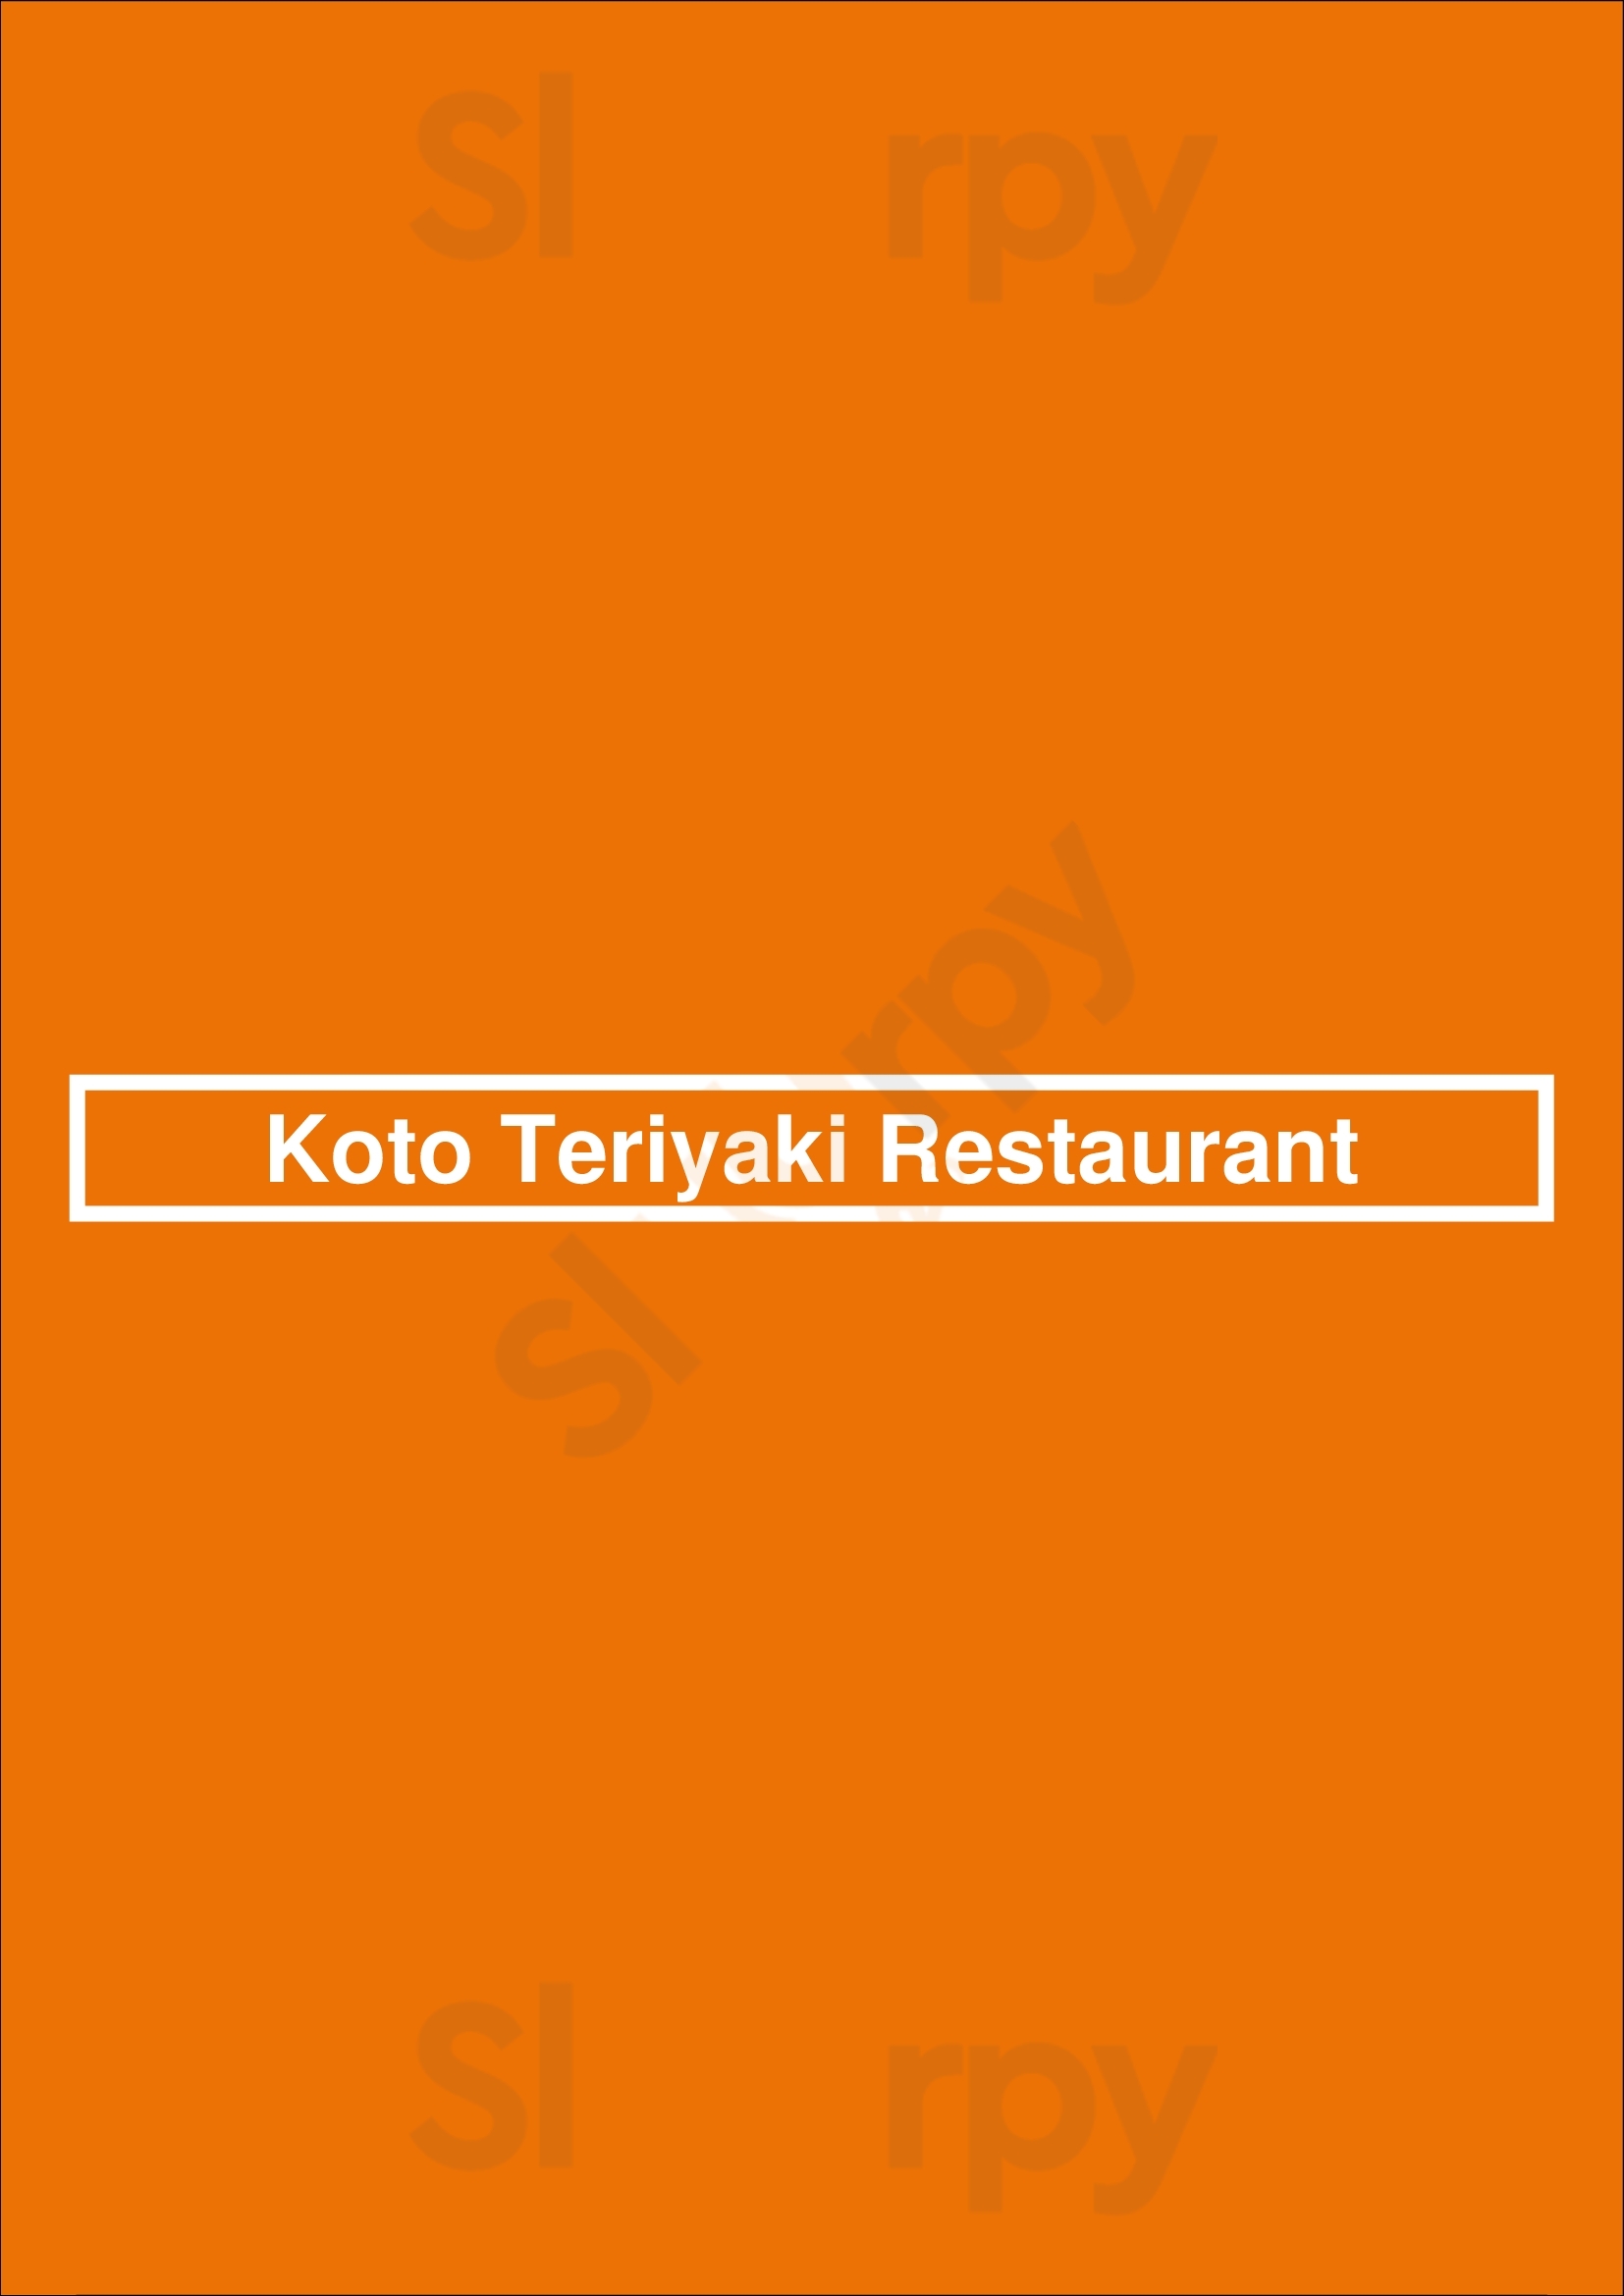 Koto Teriyaki Restaurant Lakewood Menu - 1